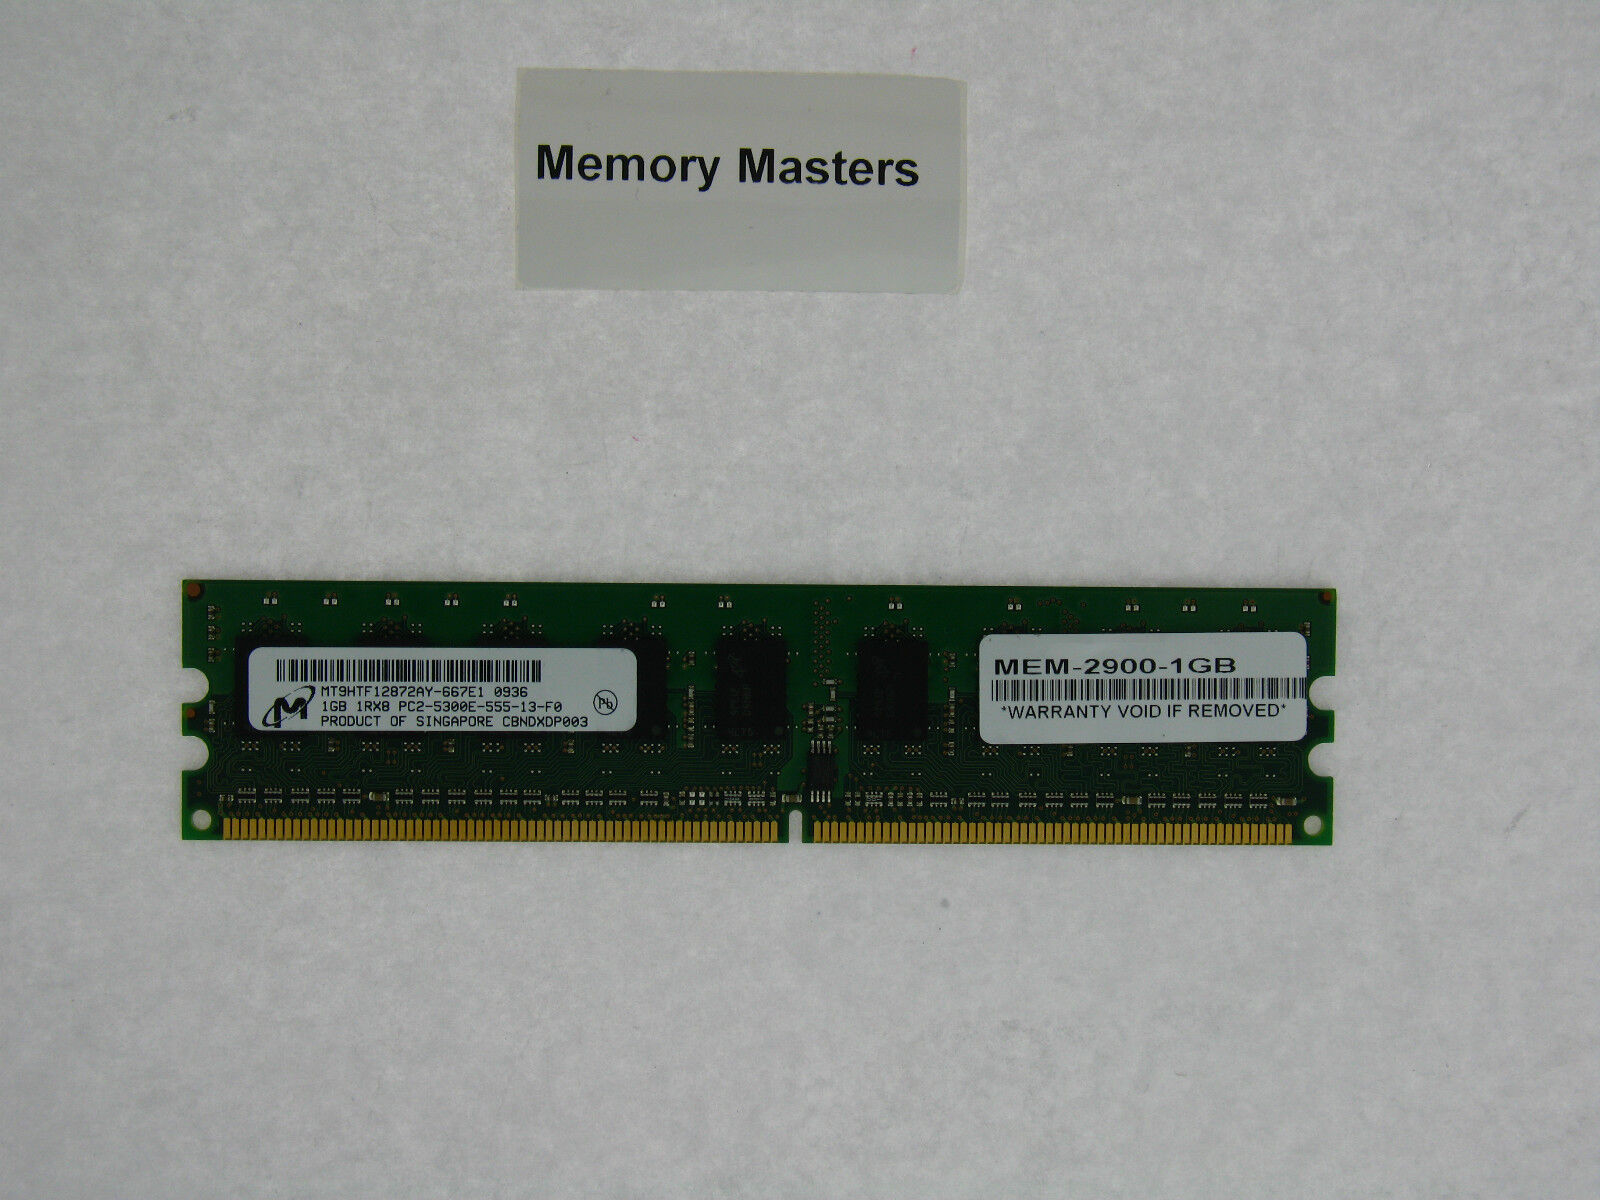 MEM-2900-1GB 1GB Approved DRAM Memory for Cisco 2900